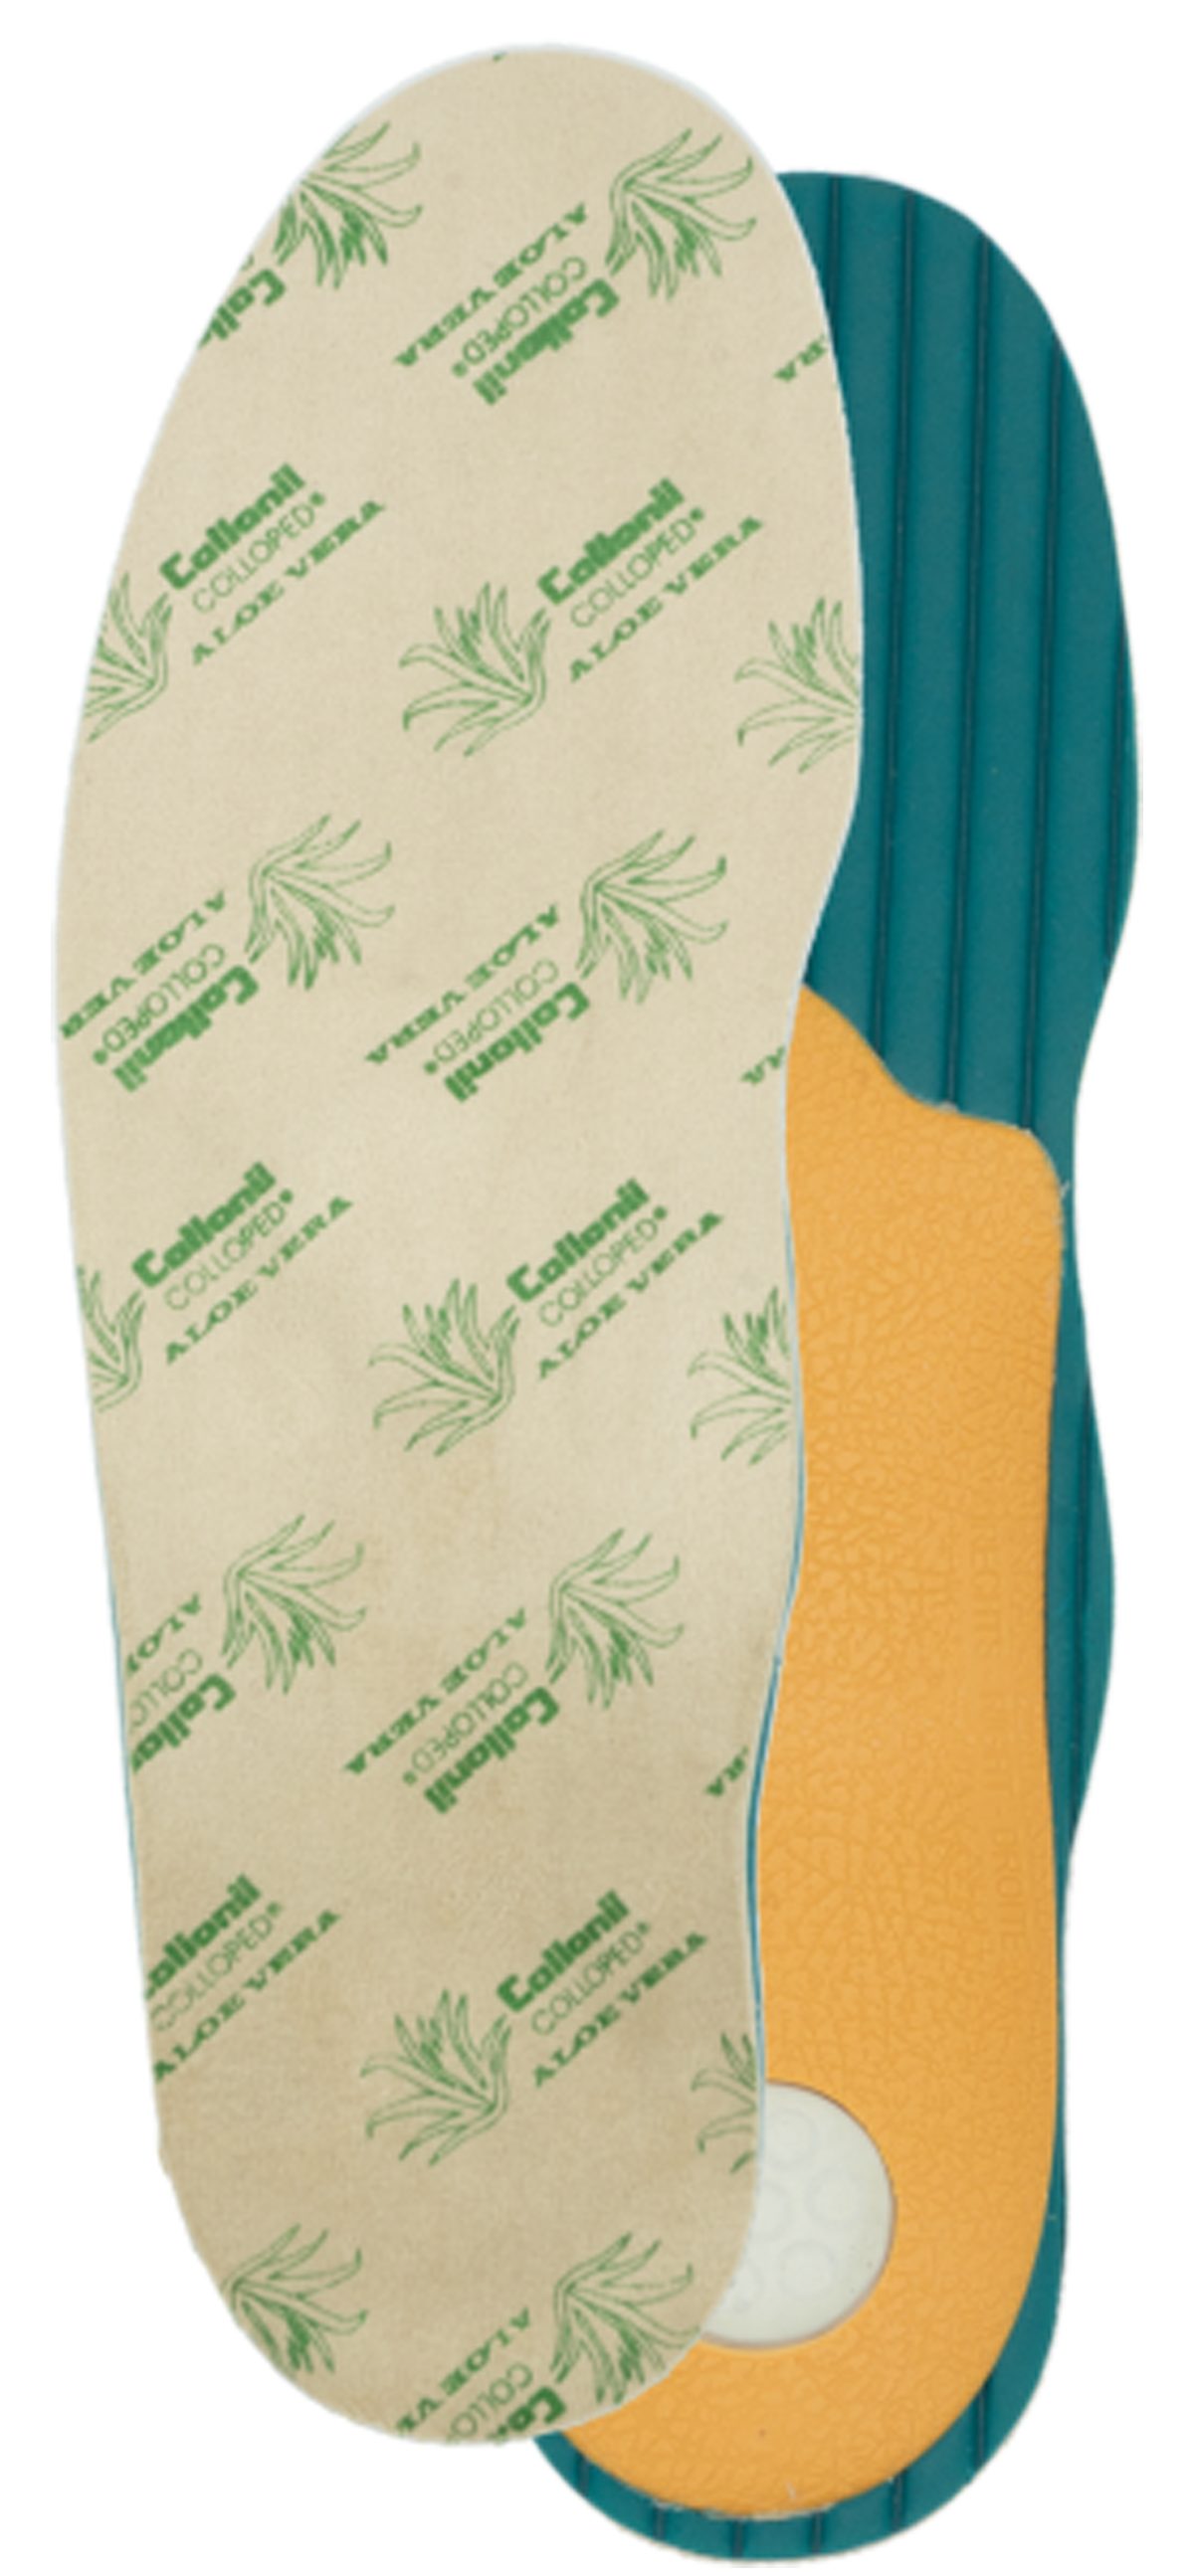 Collonil Fußbetteinlage Aloe Vera Komfort - das Fußbett mit Pflanzen-Extrakt